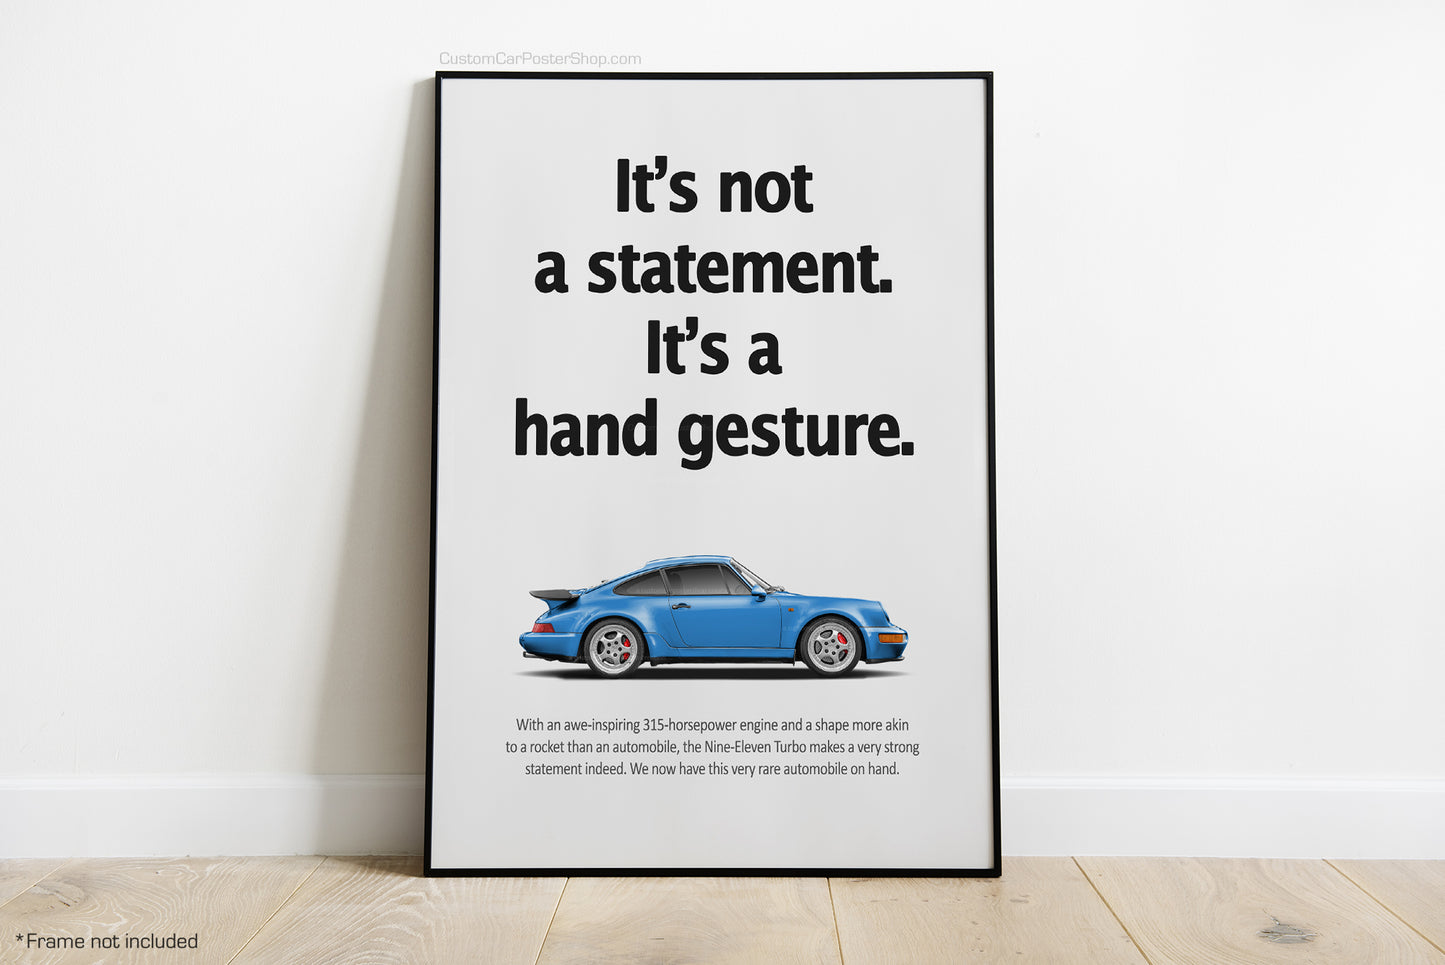 Porsche 964 Turbo Vintage Porsche Ads - Statement vs Hand Gesture